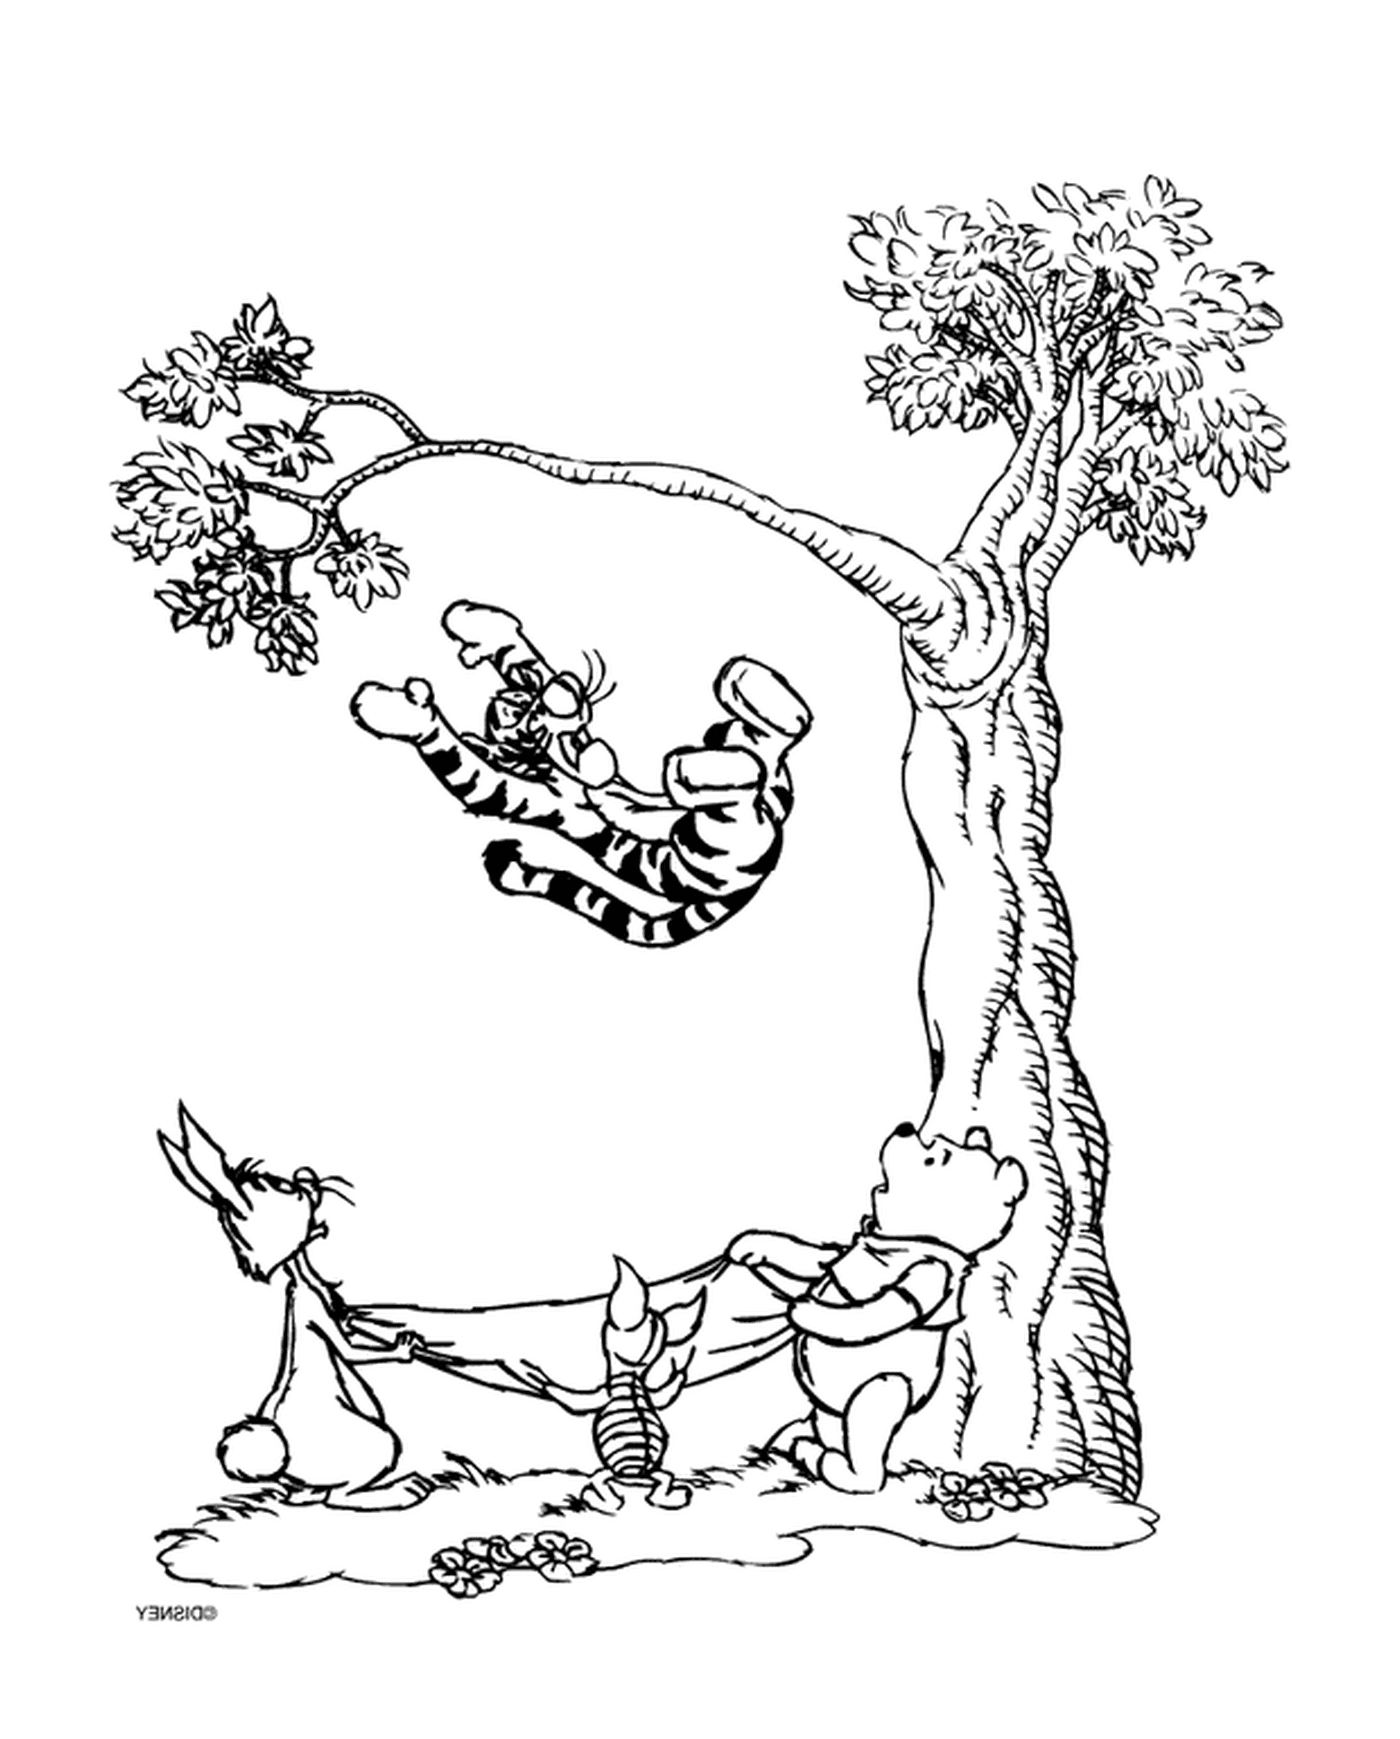  Winnie el oso y Tigrou en una rama de árbol 